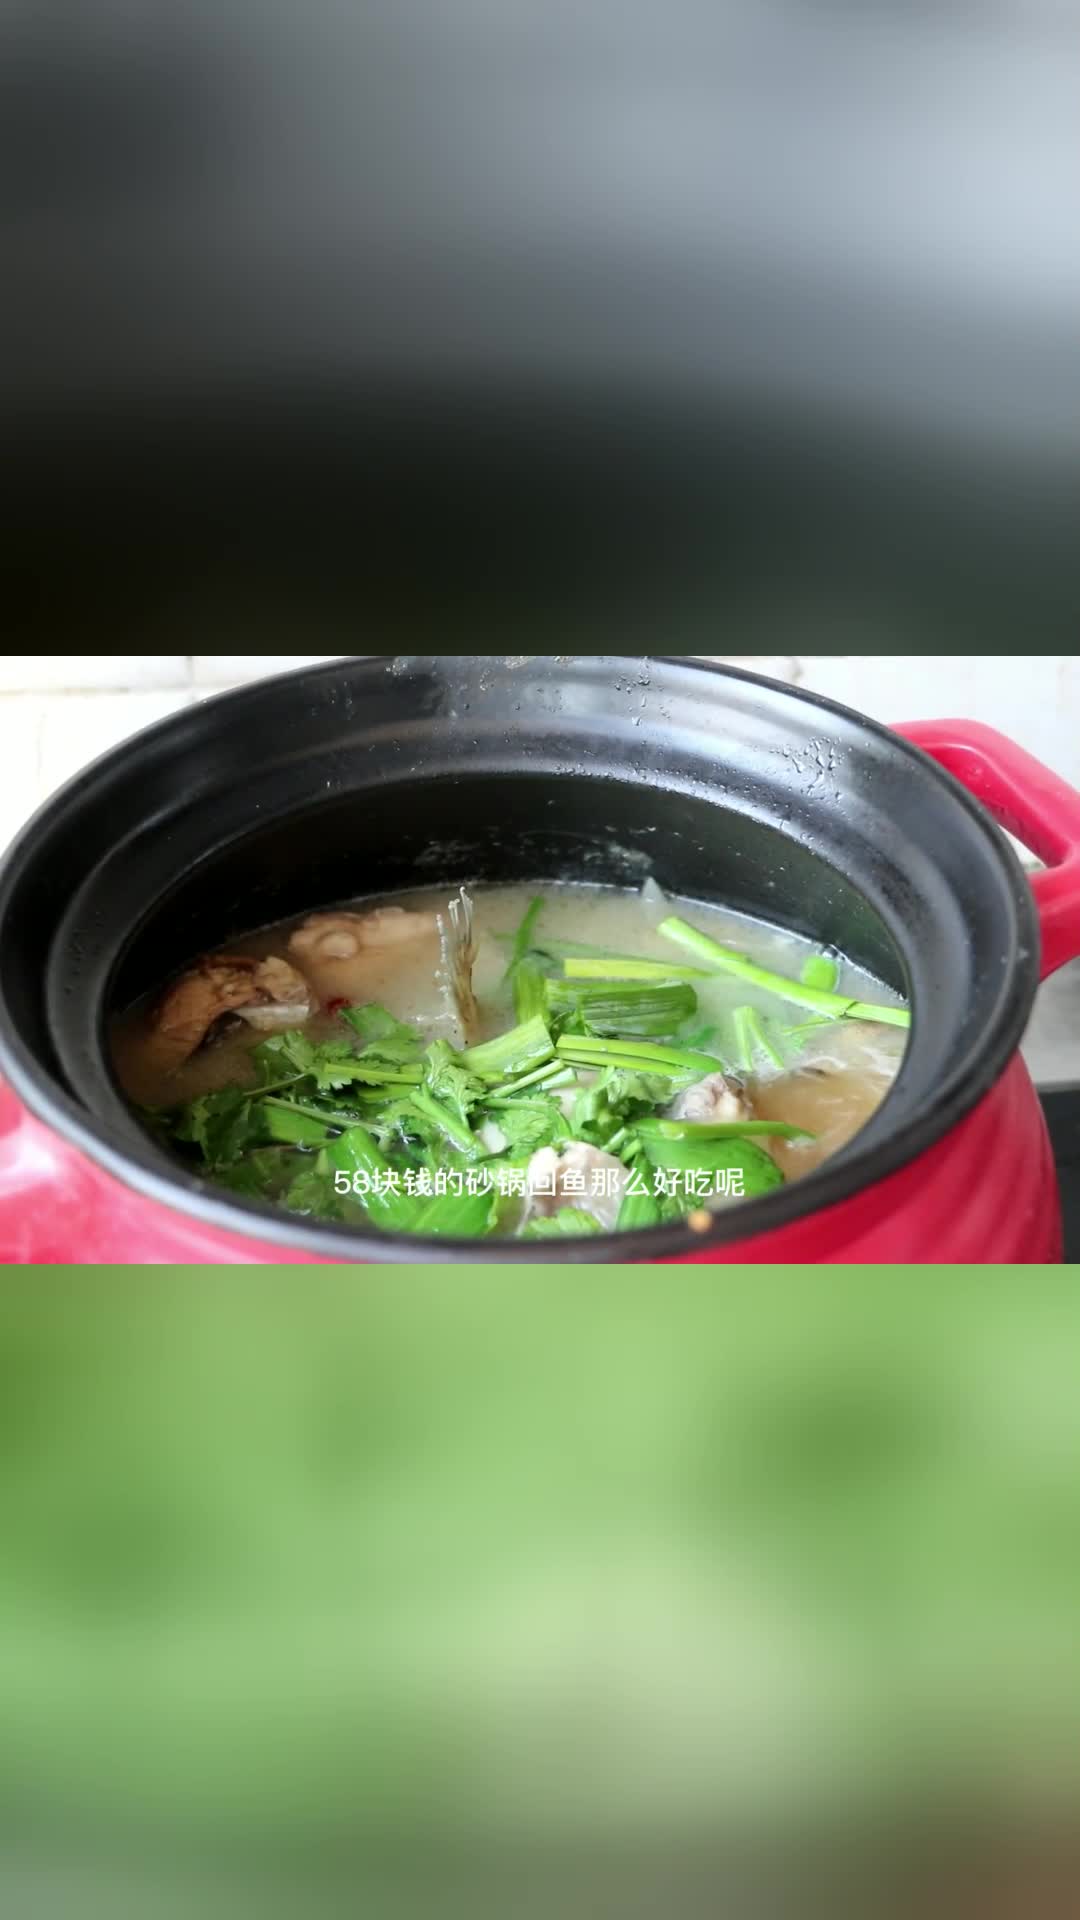 祖传砂锅鮰鱼的做法，鱼肉鲜嫩，汤汁鲜美也非常的入味，收藏了